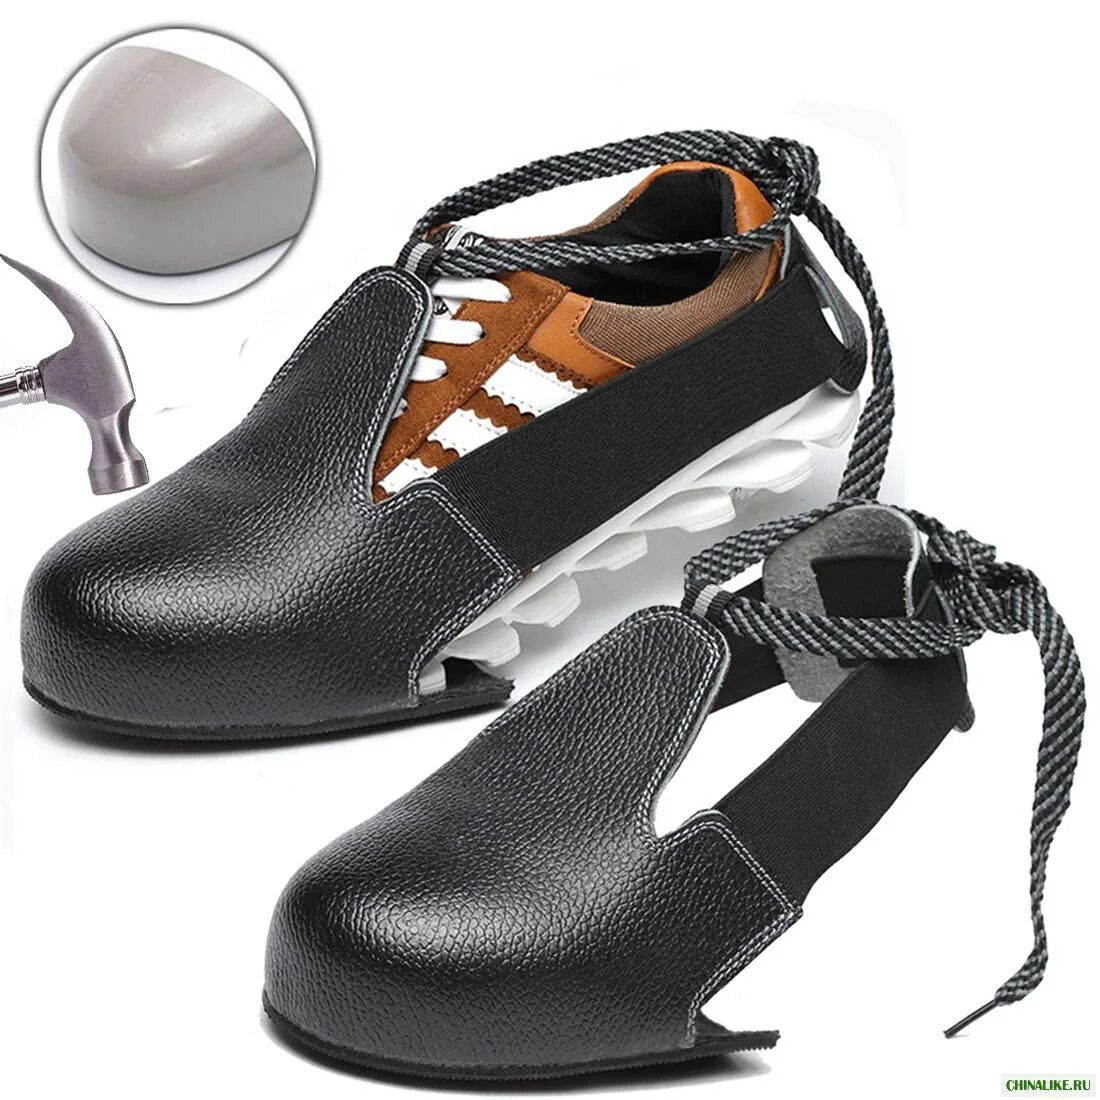 Подносок защитный съемный универсальный (размер 35-45). Обувь защитный съемный универсальный (размер 35-45). Steel Toe обувь. Защитные подноски на обувь.